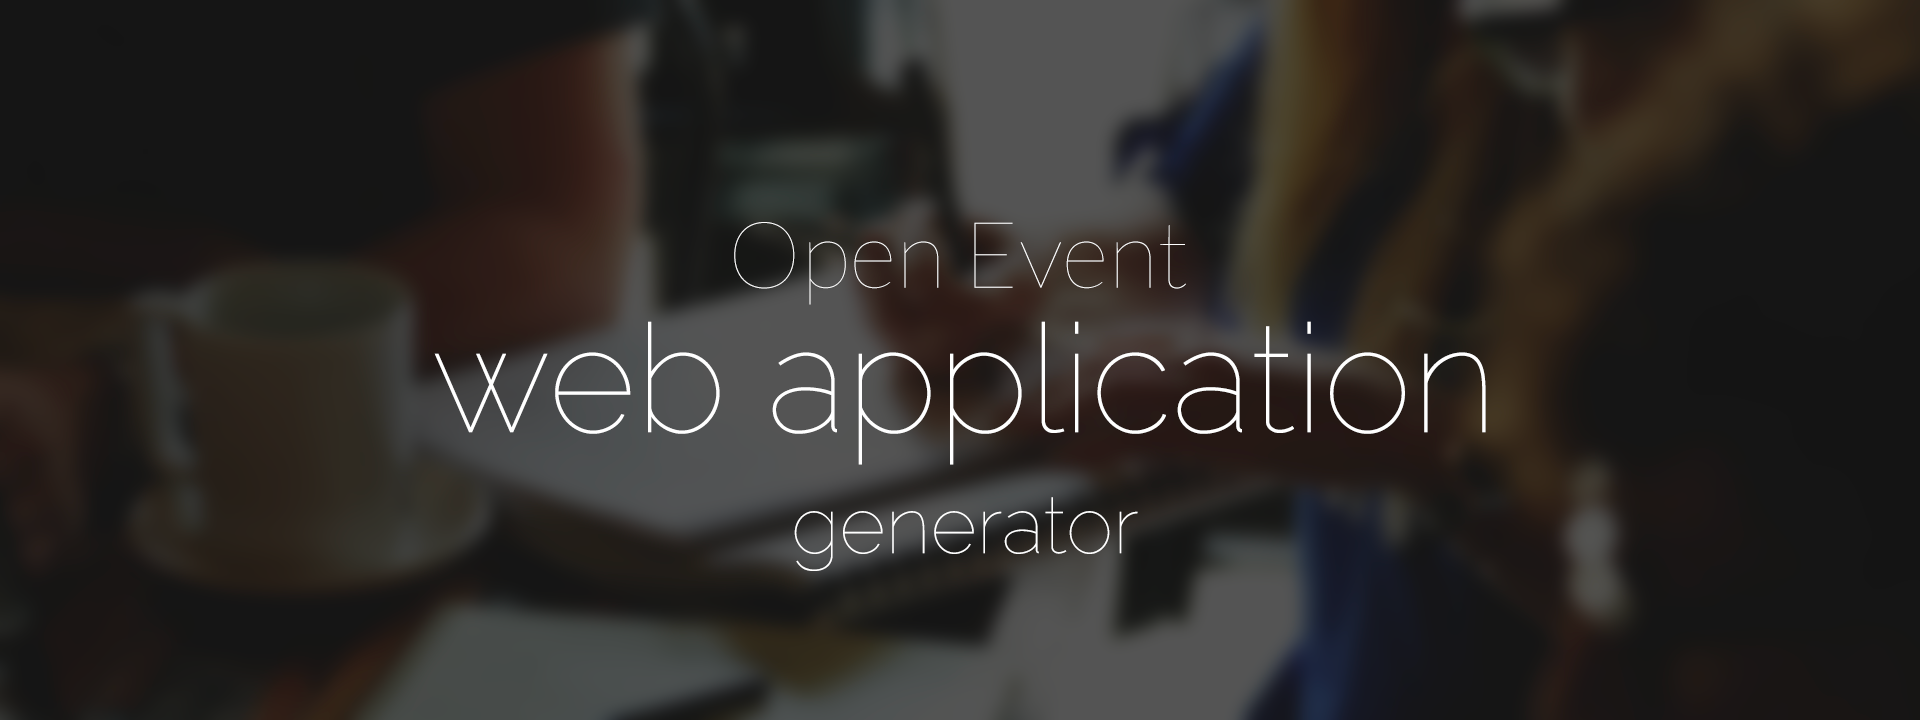 Open Event webapp